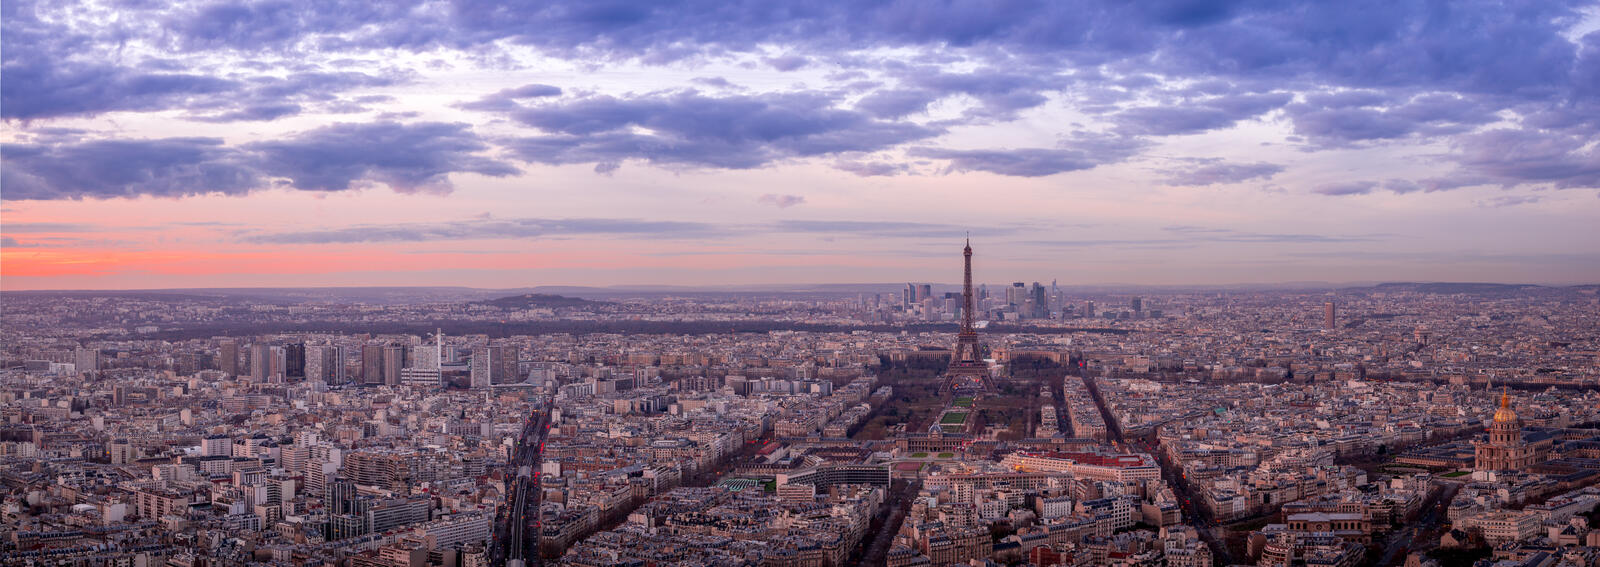 Обои Paris рассвет панорама на рабочий стол